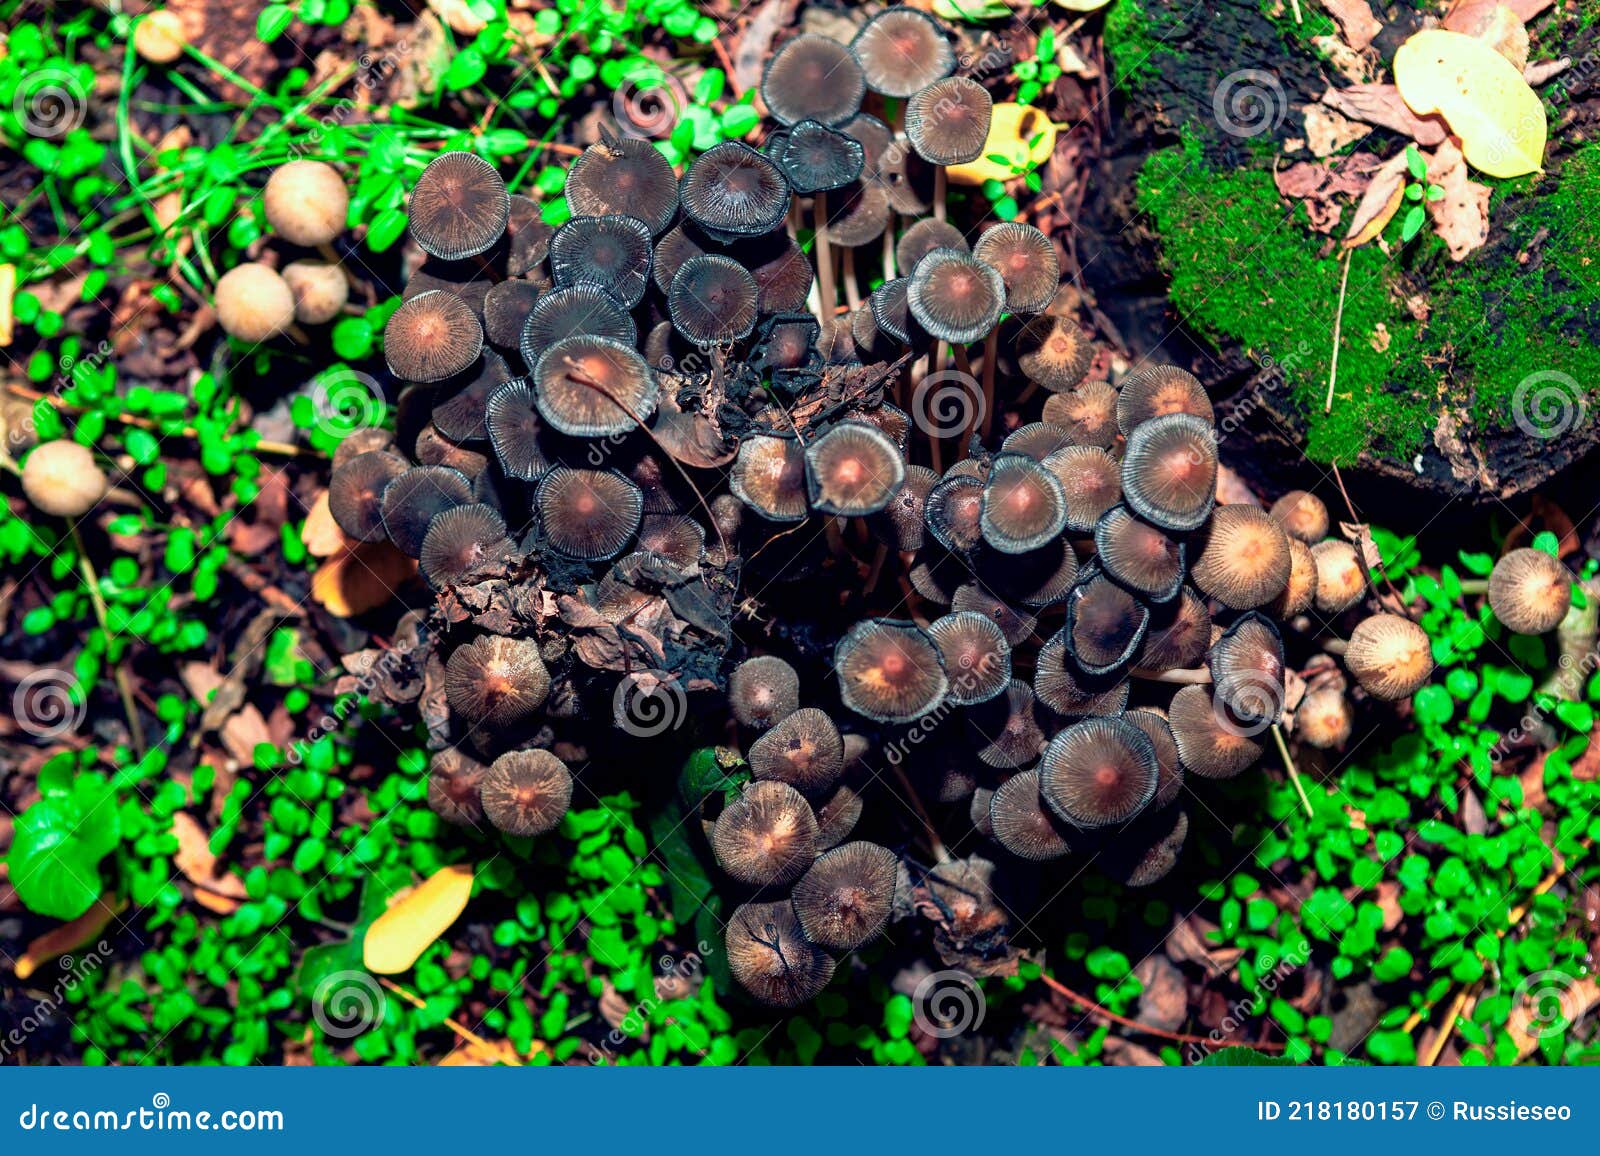 科学网—科微学术： 李海蛟博士带您了解毒蘑菇——大青褶伞 - 韩力的博文